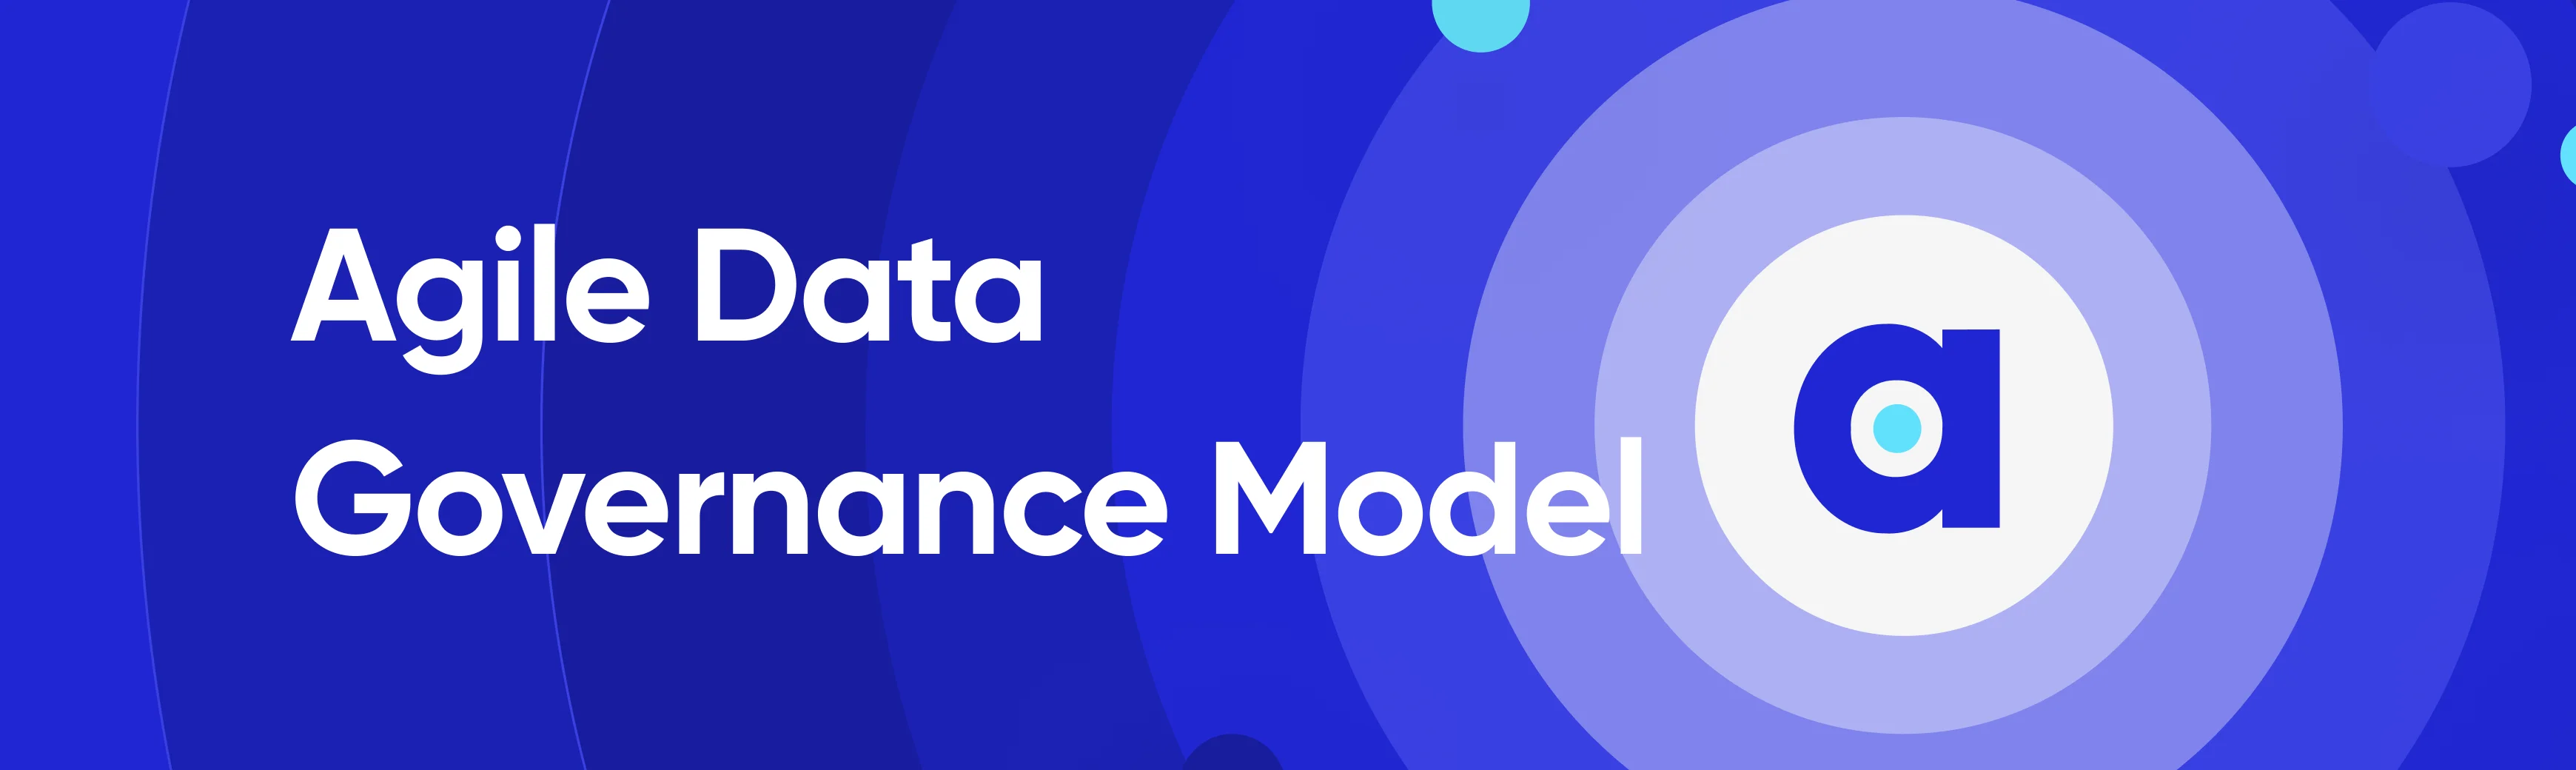 Agile Data Governance Model